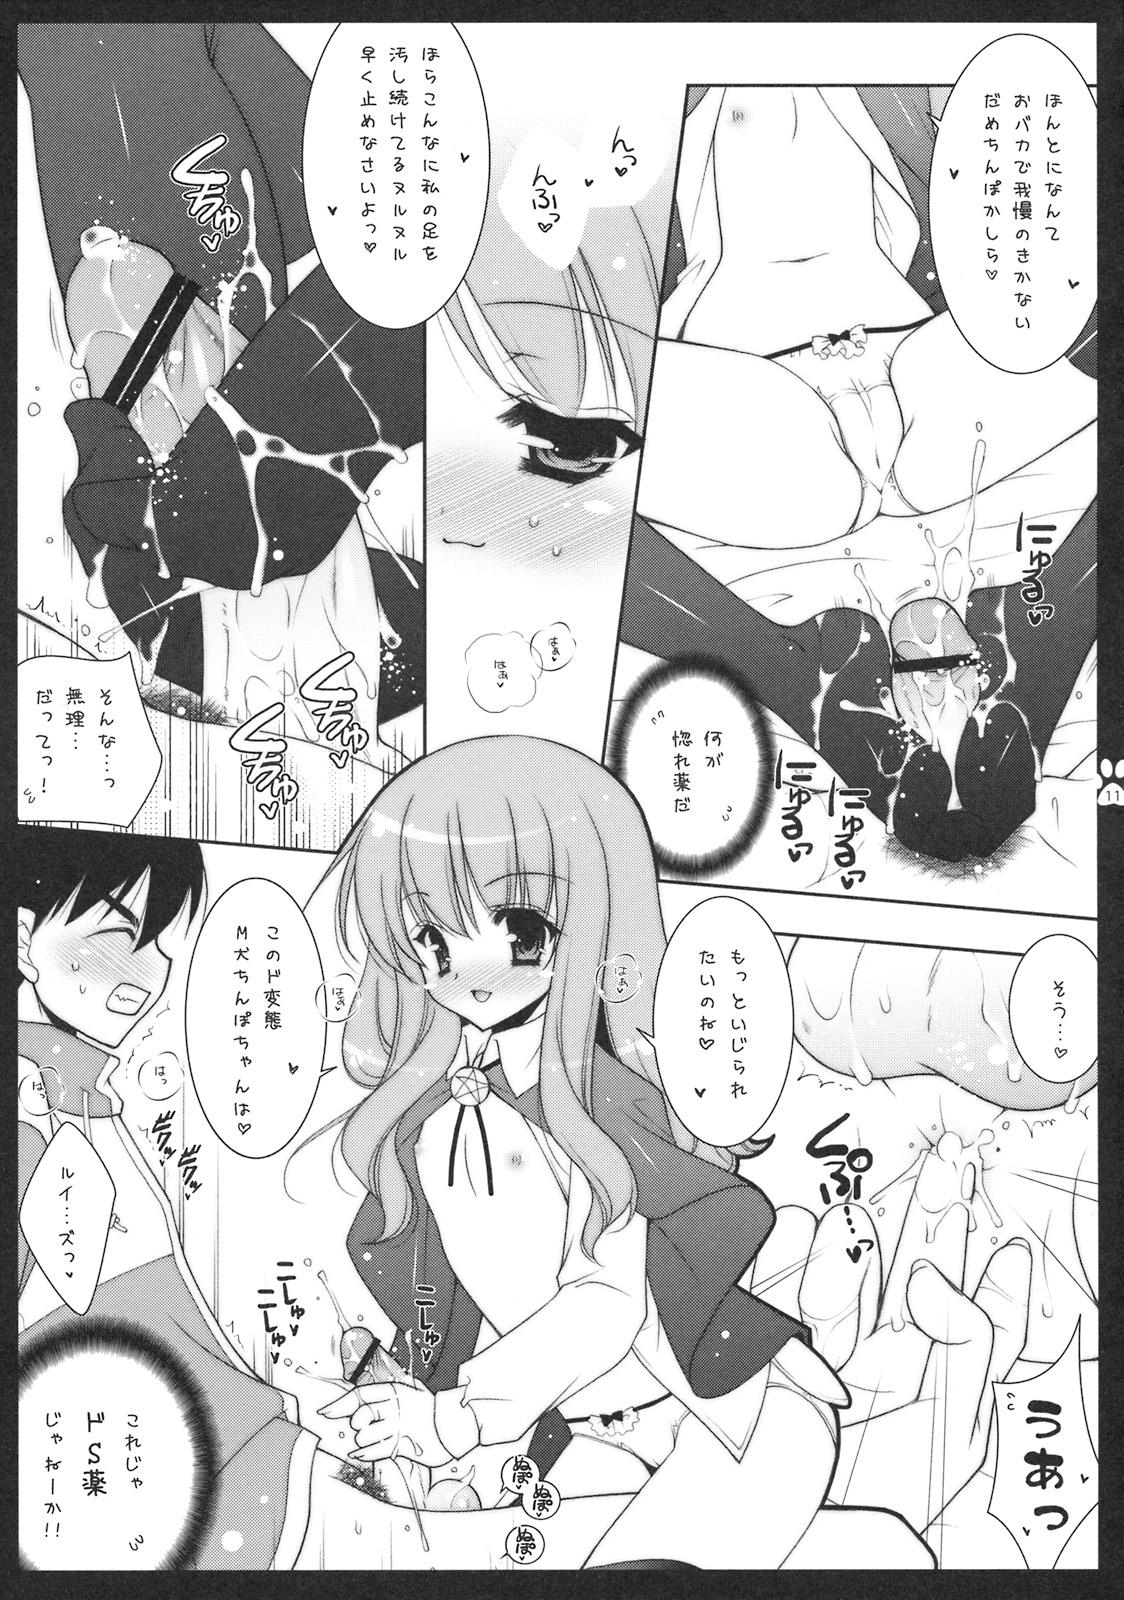 Squirters Shigukore 4 - Zero no tsukaima Sex Massage - Page 10